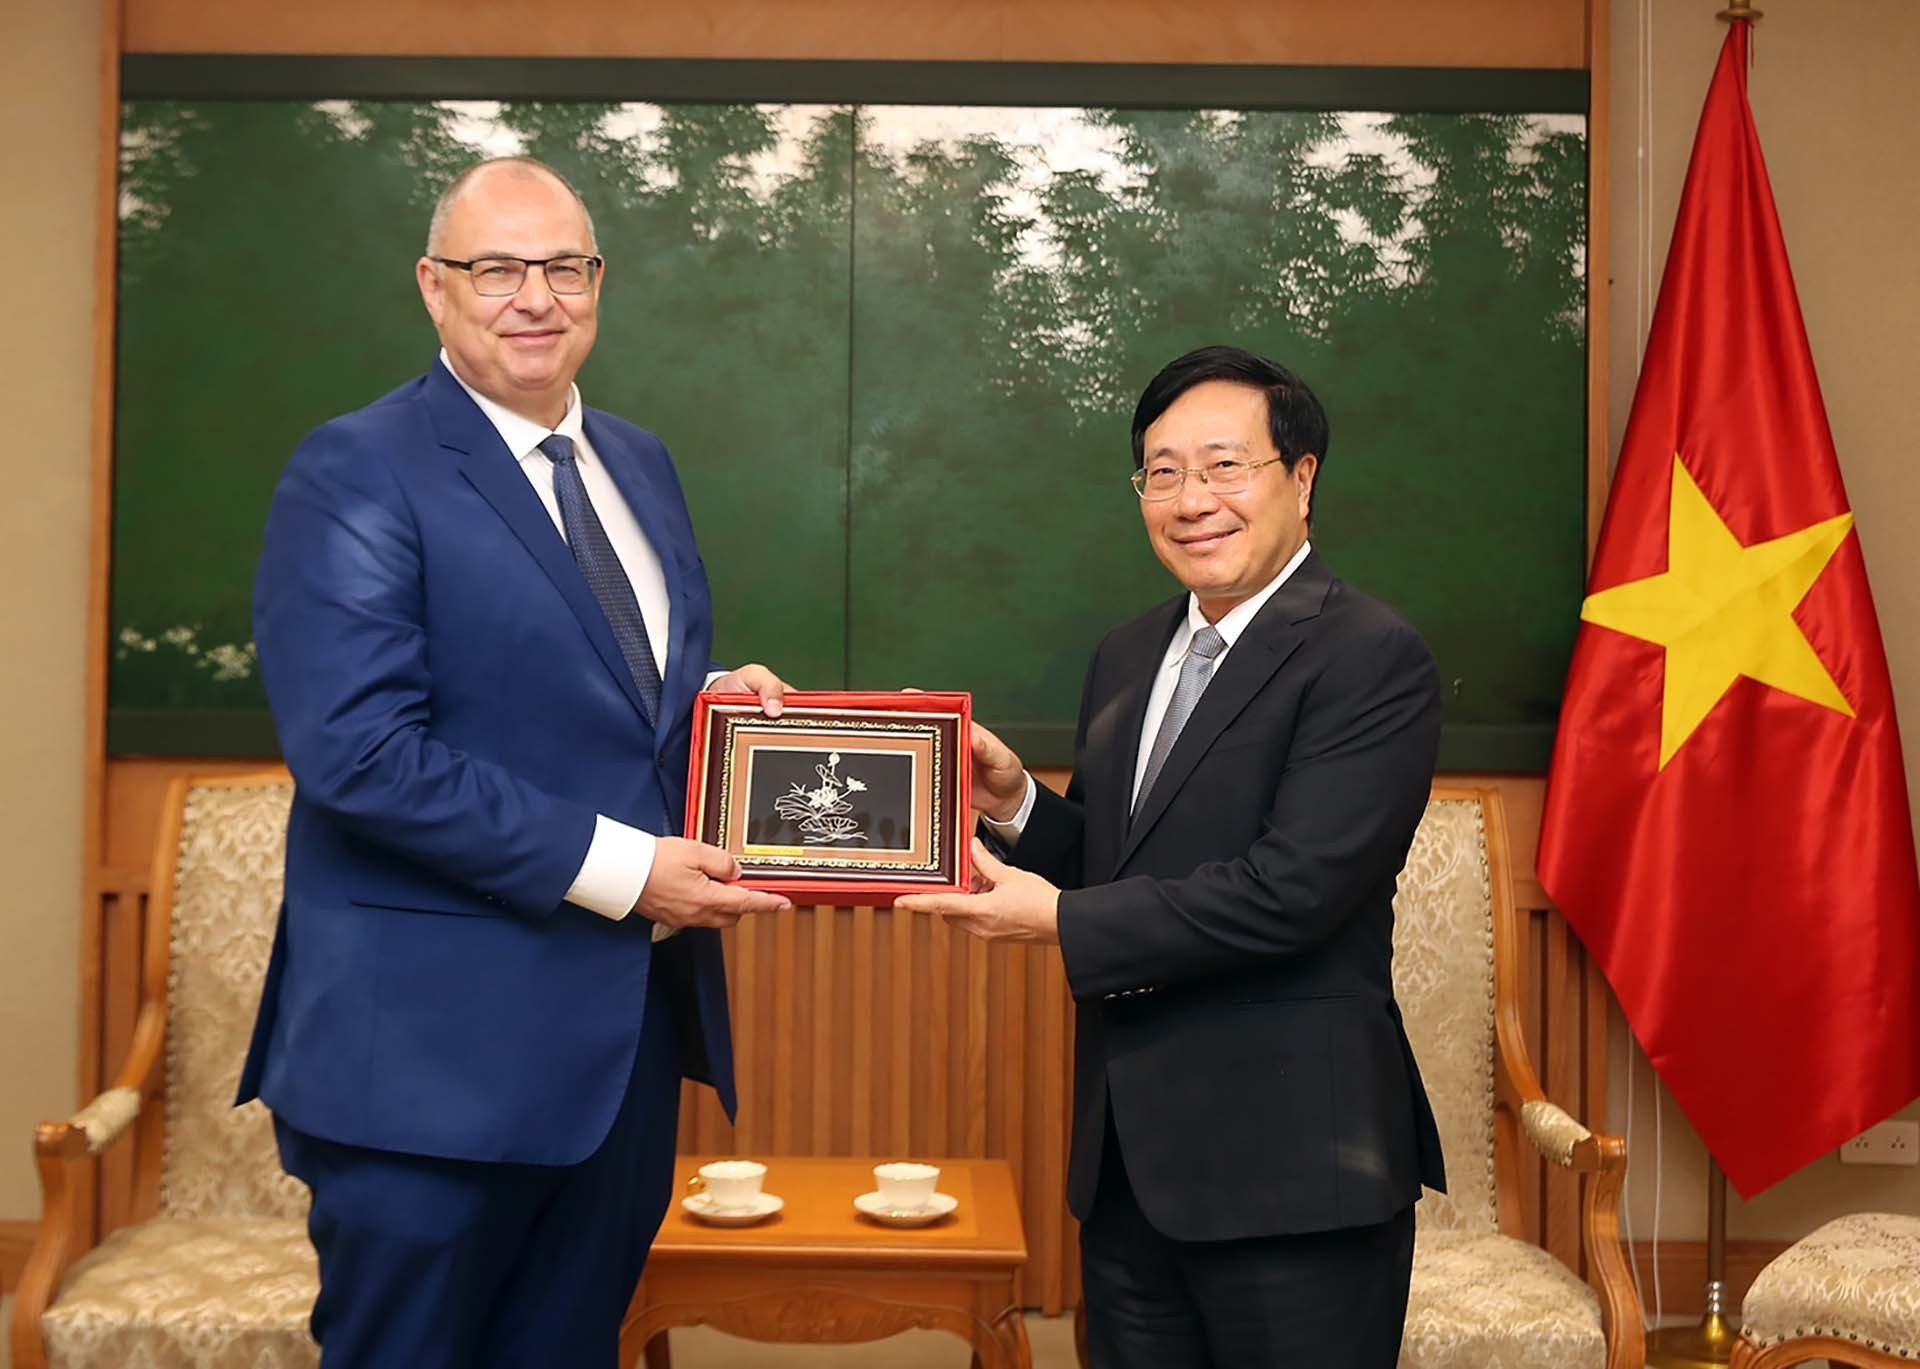 Phó Thủ tướng Thường trực Phạm Bình Minh tiếp Đại sứ Đan Mạch chào từ biệt nhân kết thúc nhiệm kỳ công tác tại Việt Nam. (Nguồn: VGP)